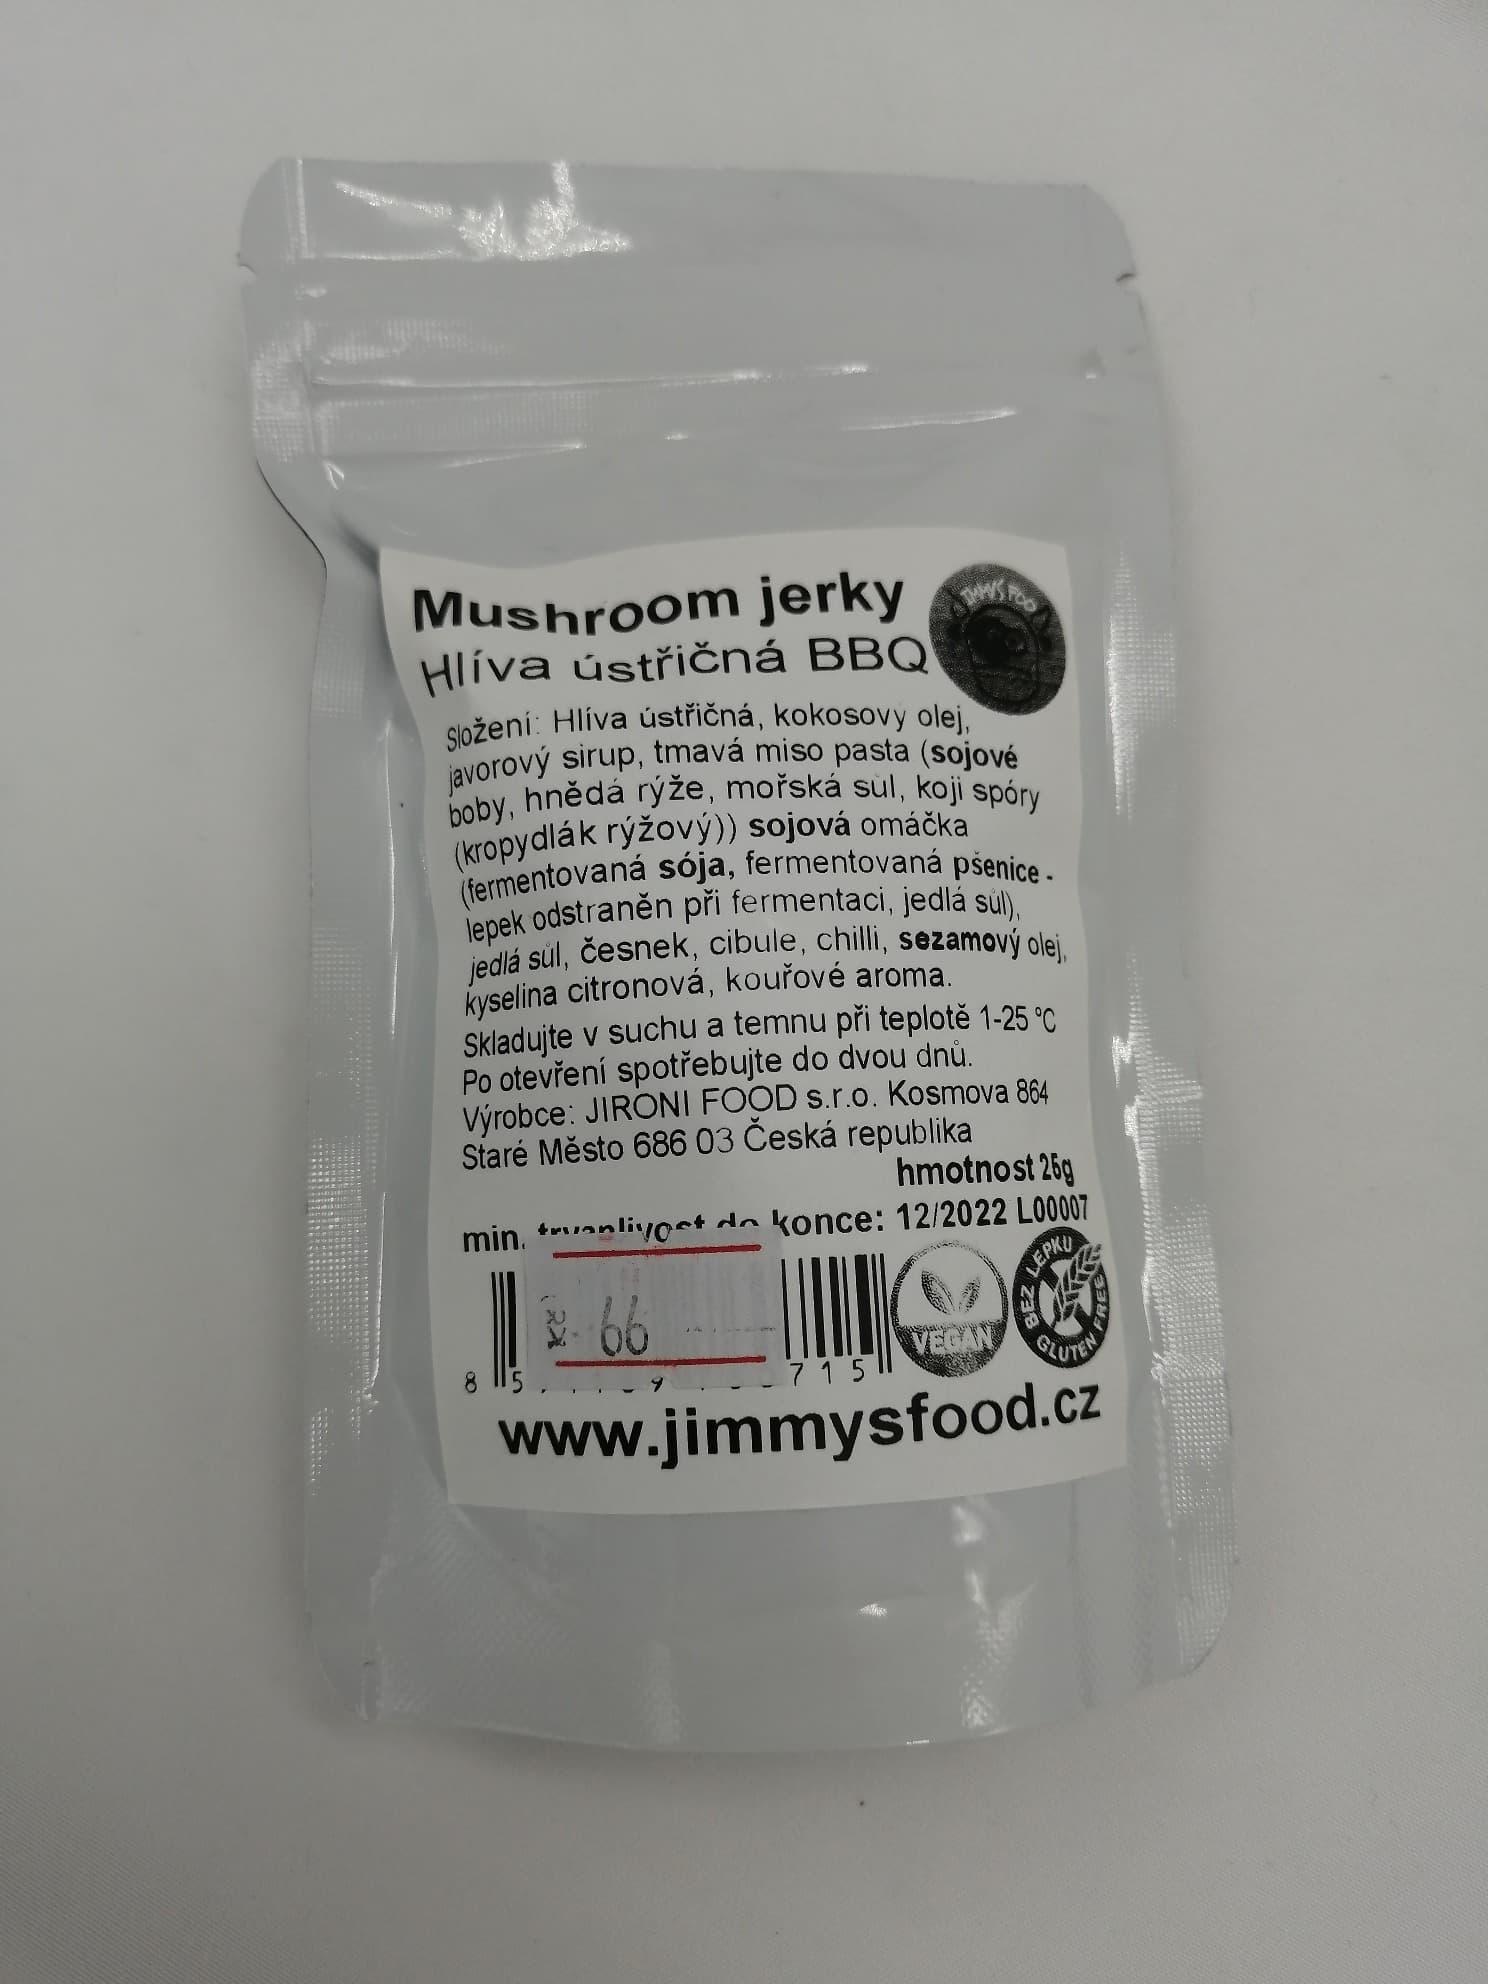 Mushroom jerky 25 g